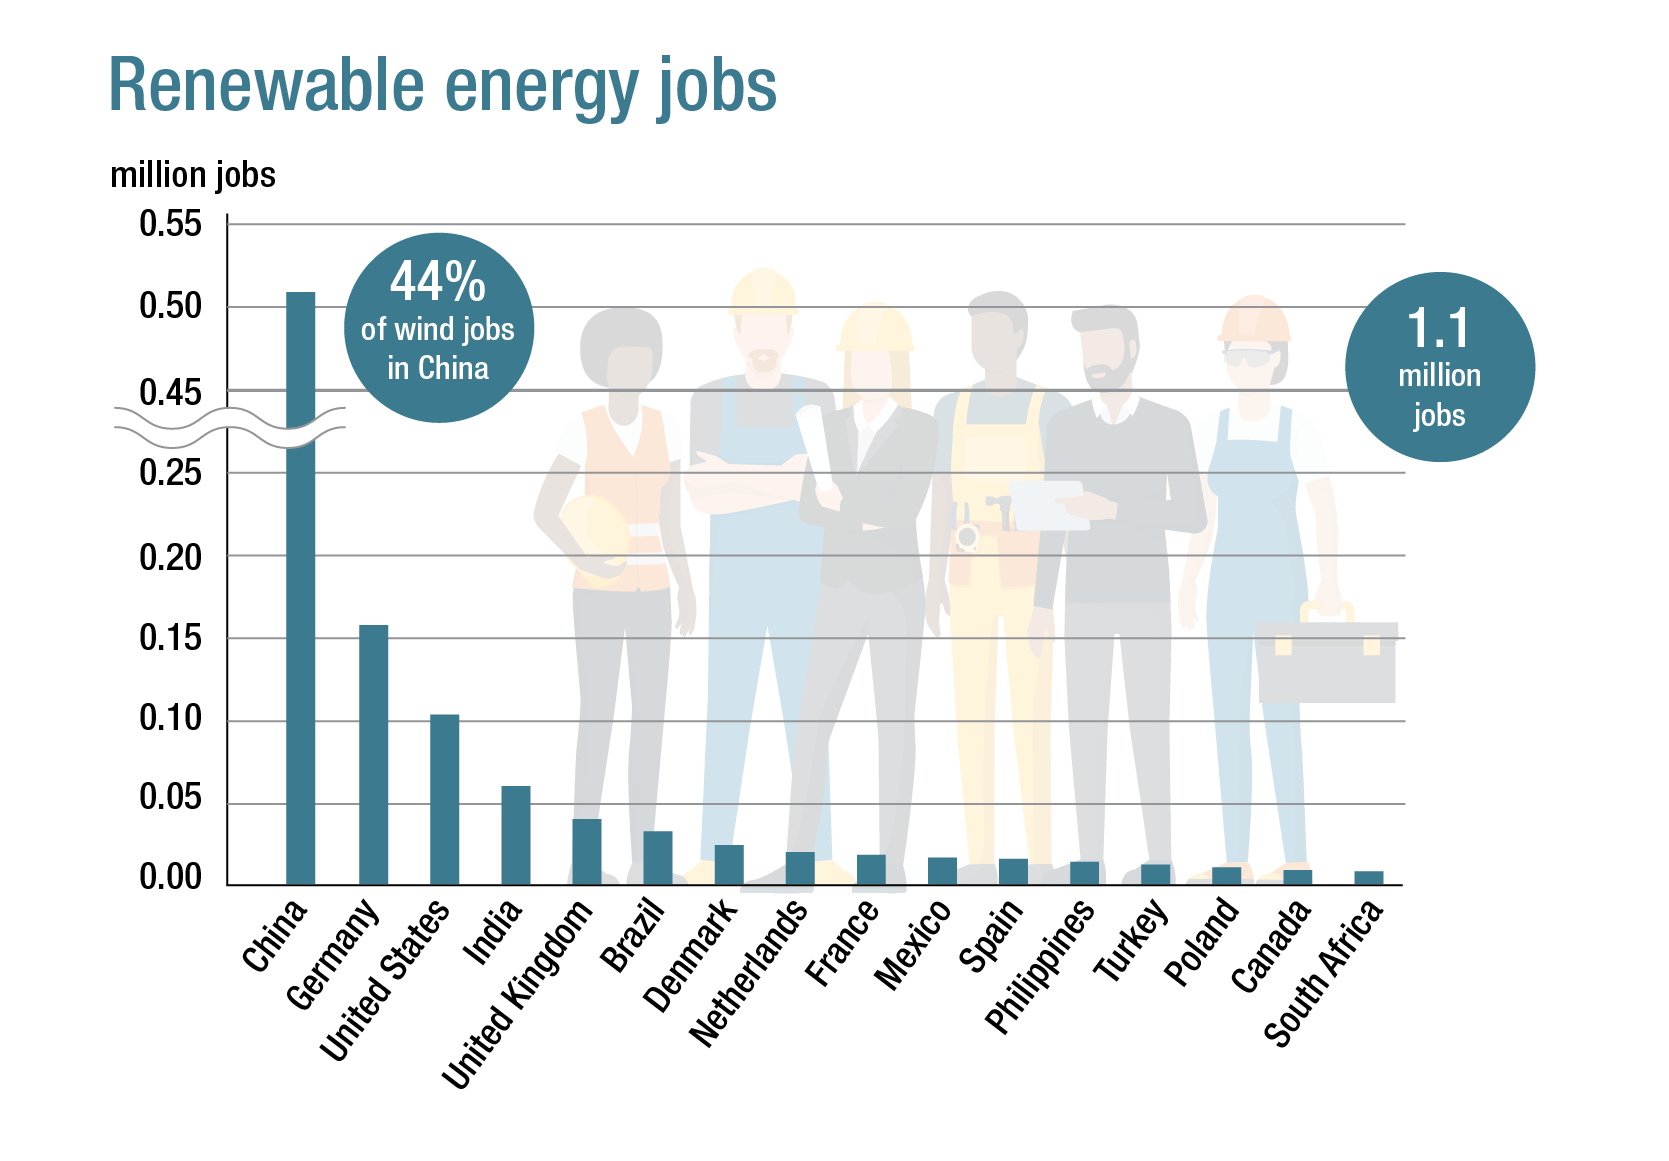 Renewable energy jobs world-wide